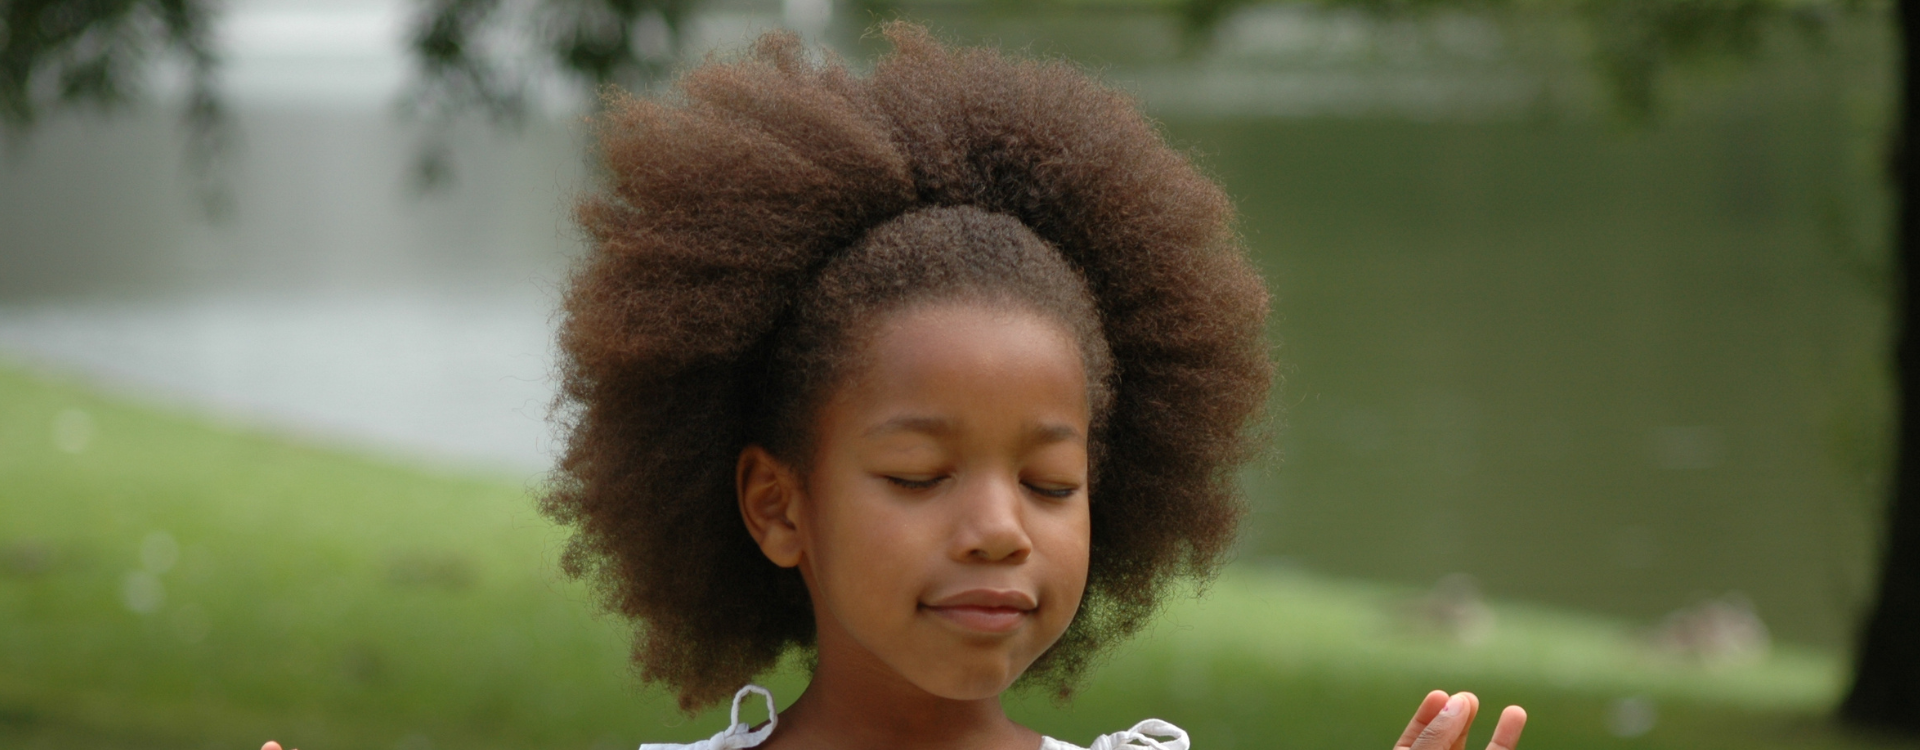 Comment Prendre Soin des Cheveux d'un Enfant ? – TopBrush®